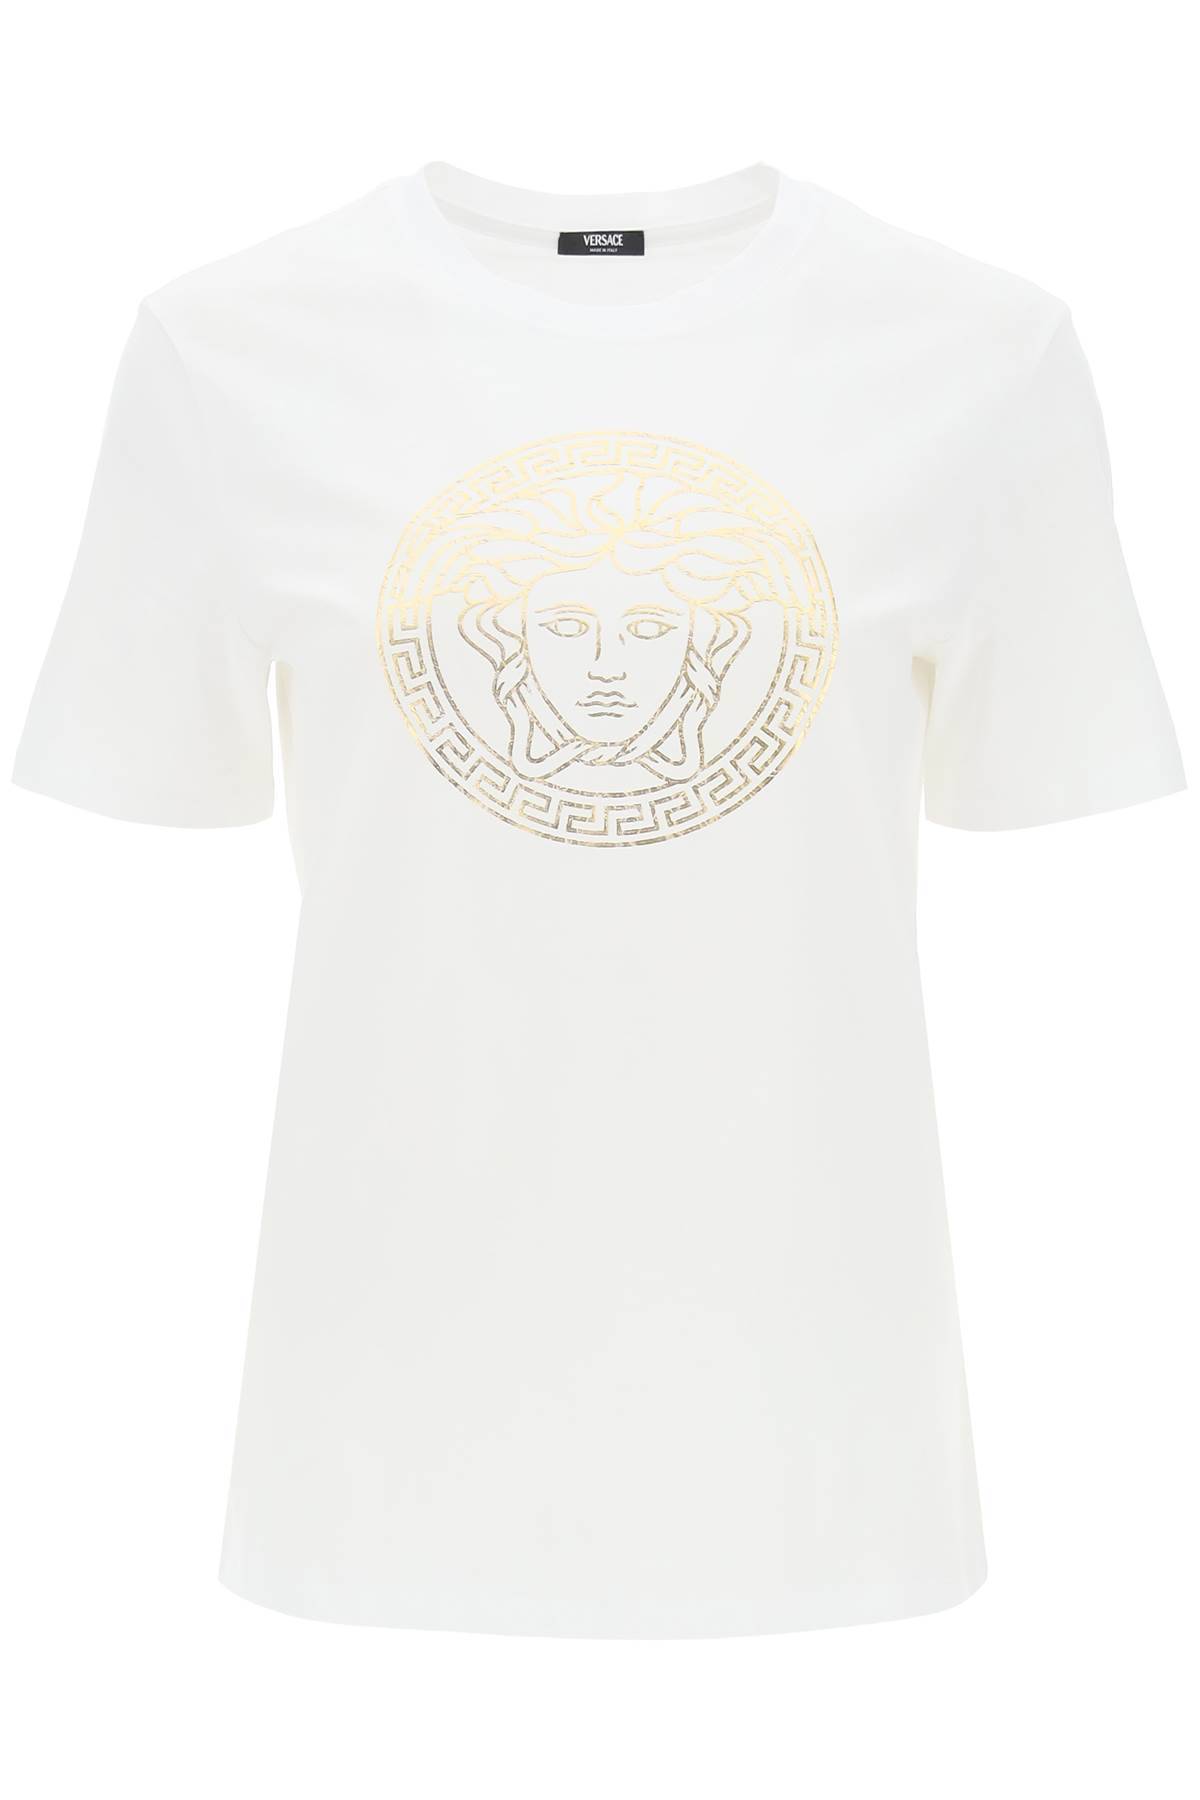 Versace VERSACE medusa crew-neck t-shirt